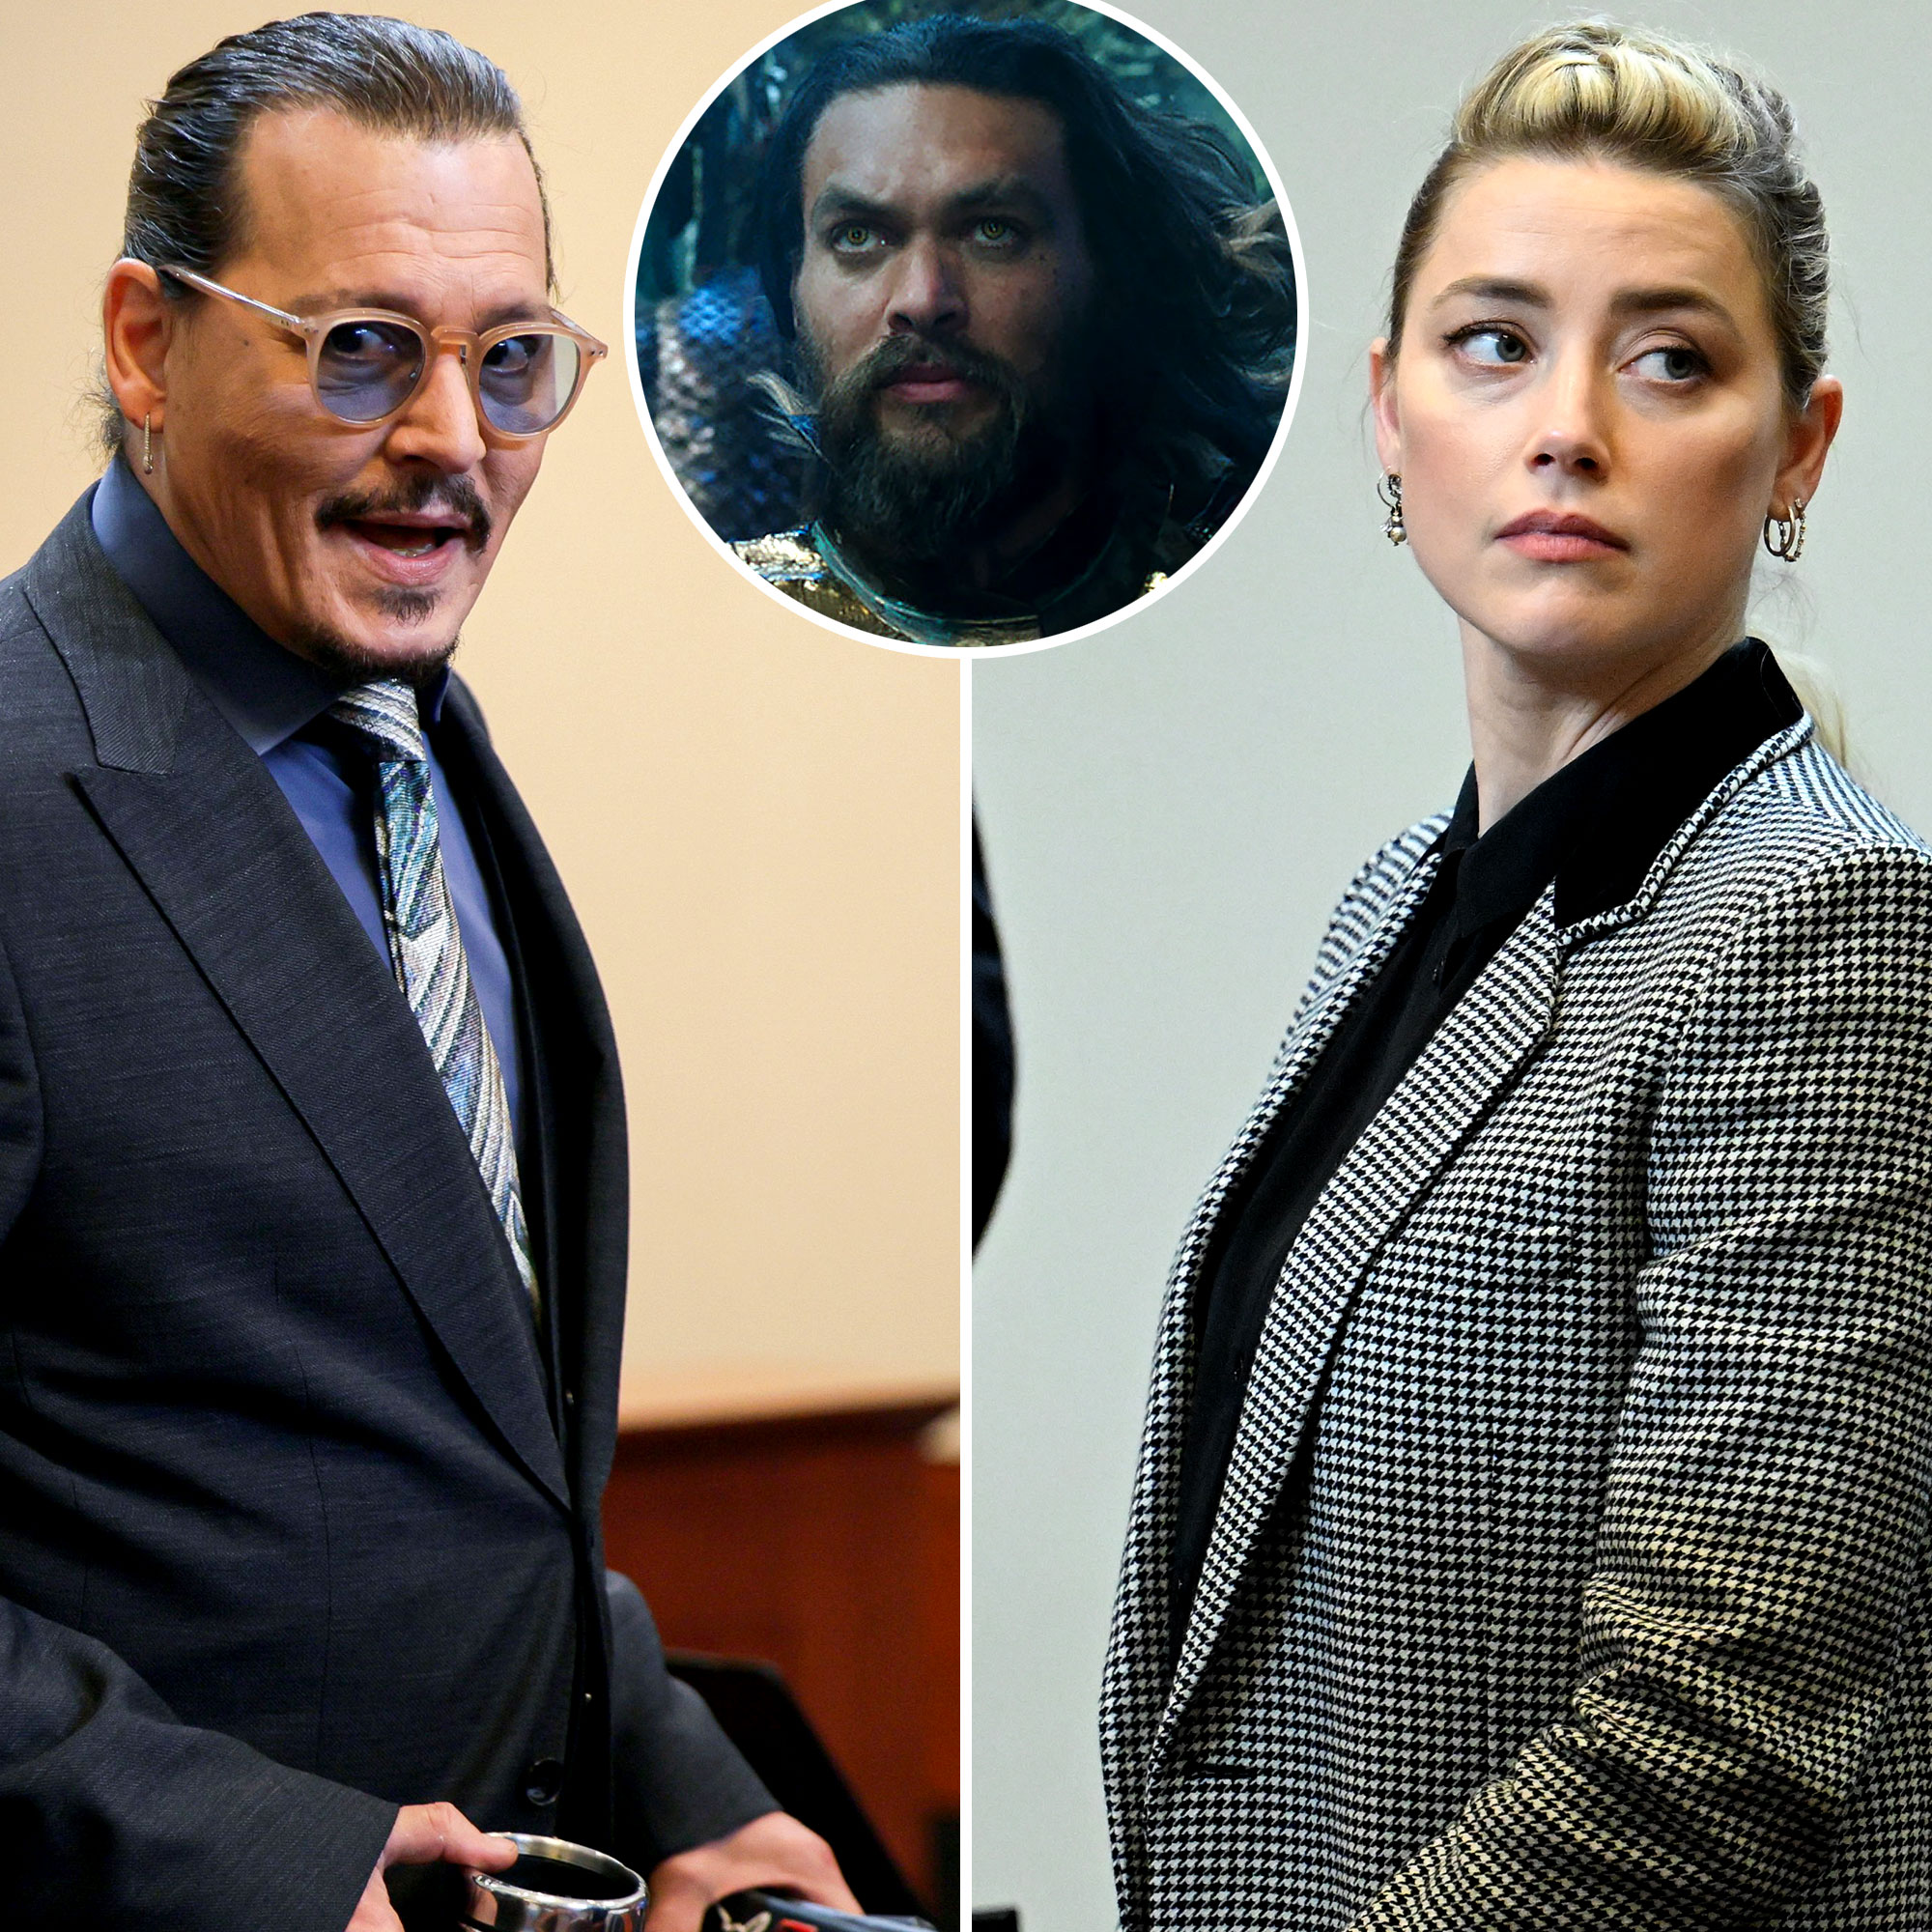 Acusado de agressão, Johnny Depp pediu a demissão de Amber Heard de Aquaman  · Notícias da TV